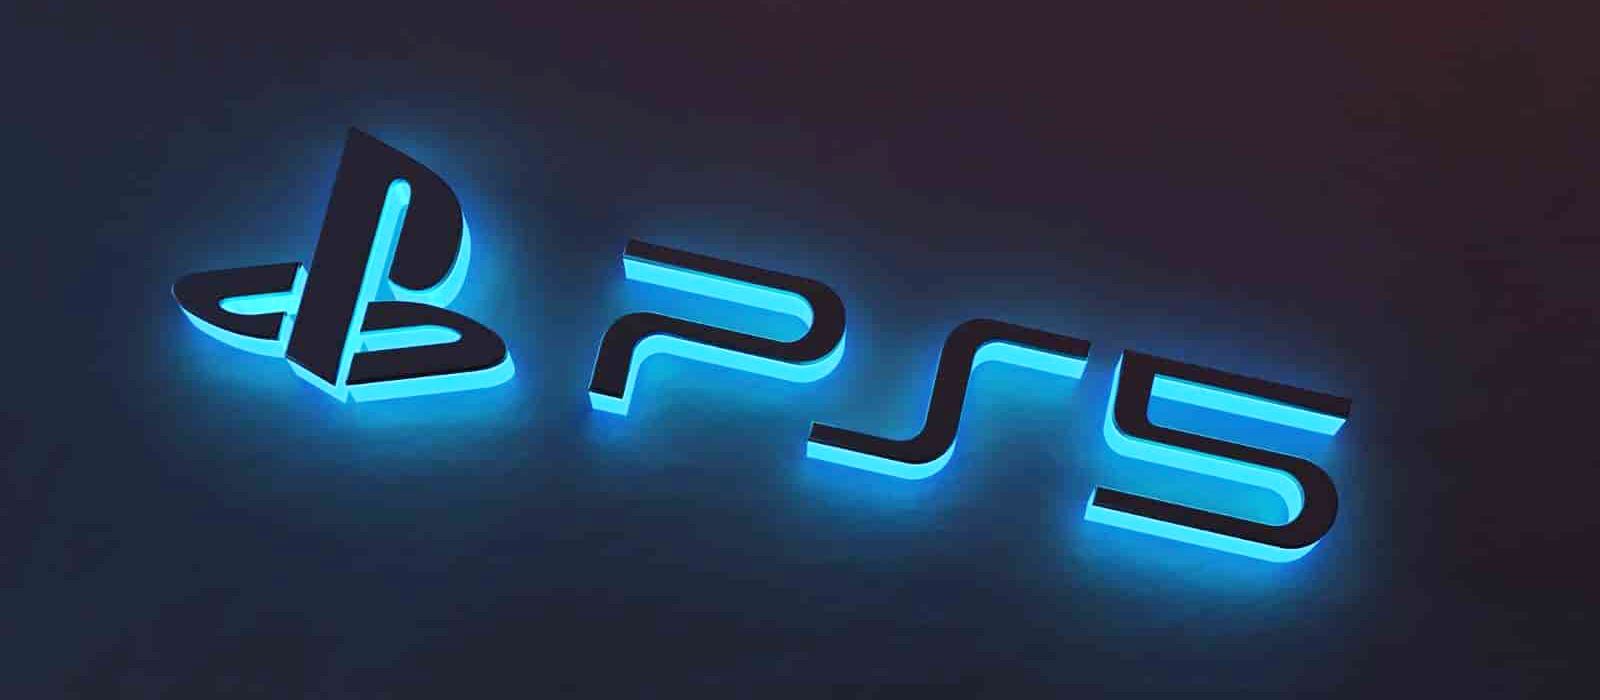 В сети нашли рекламу PlayStation 5 с перечислением главных особенностей консоли